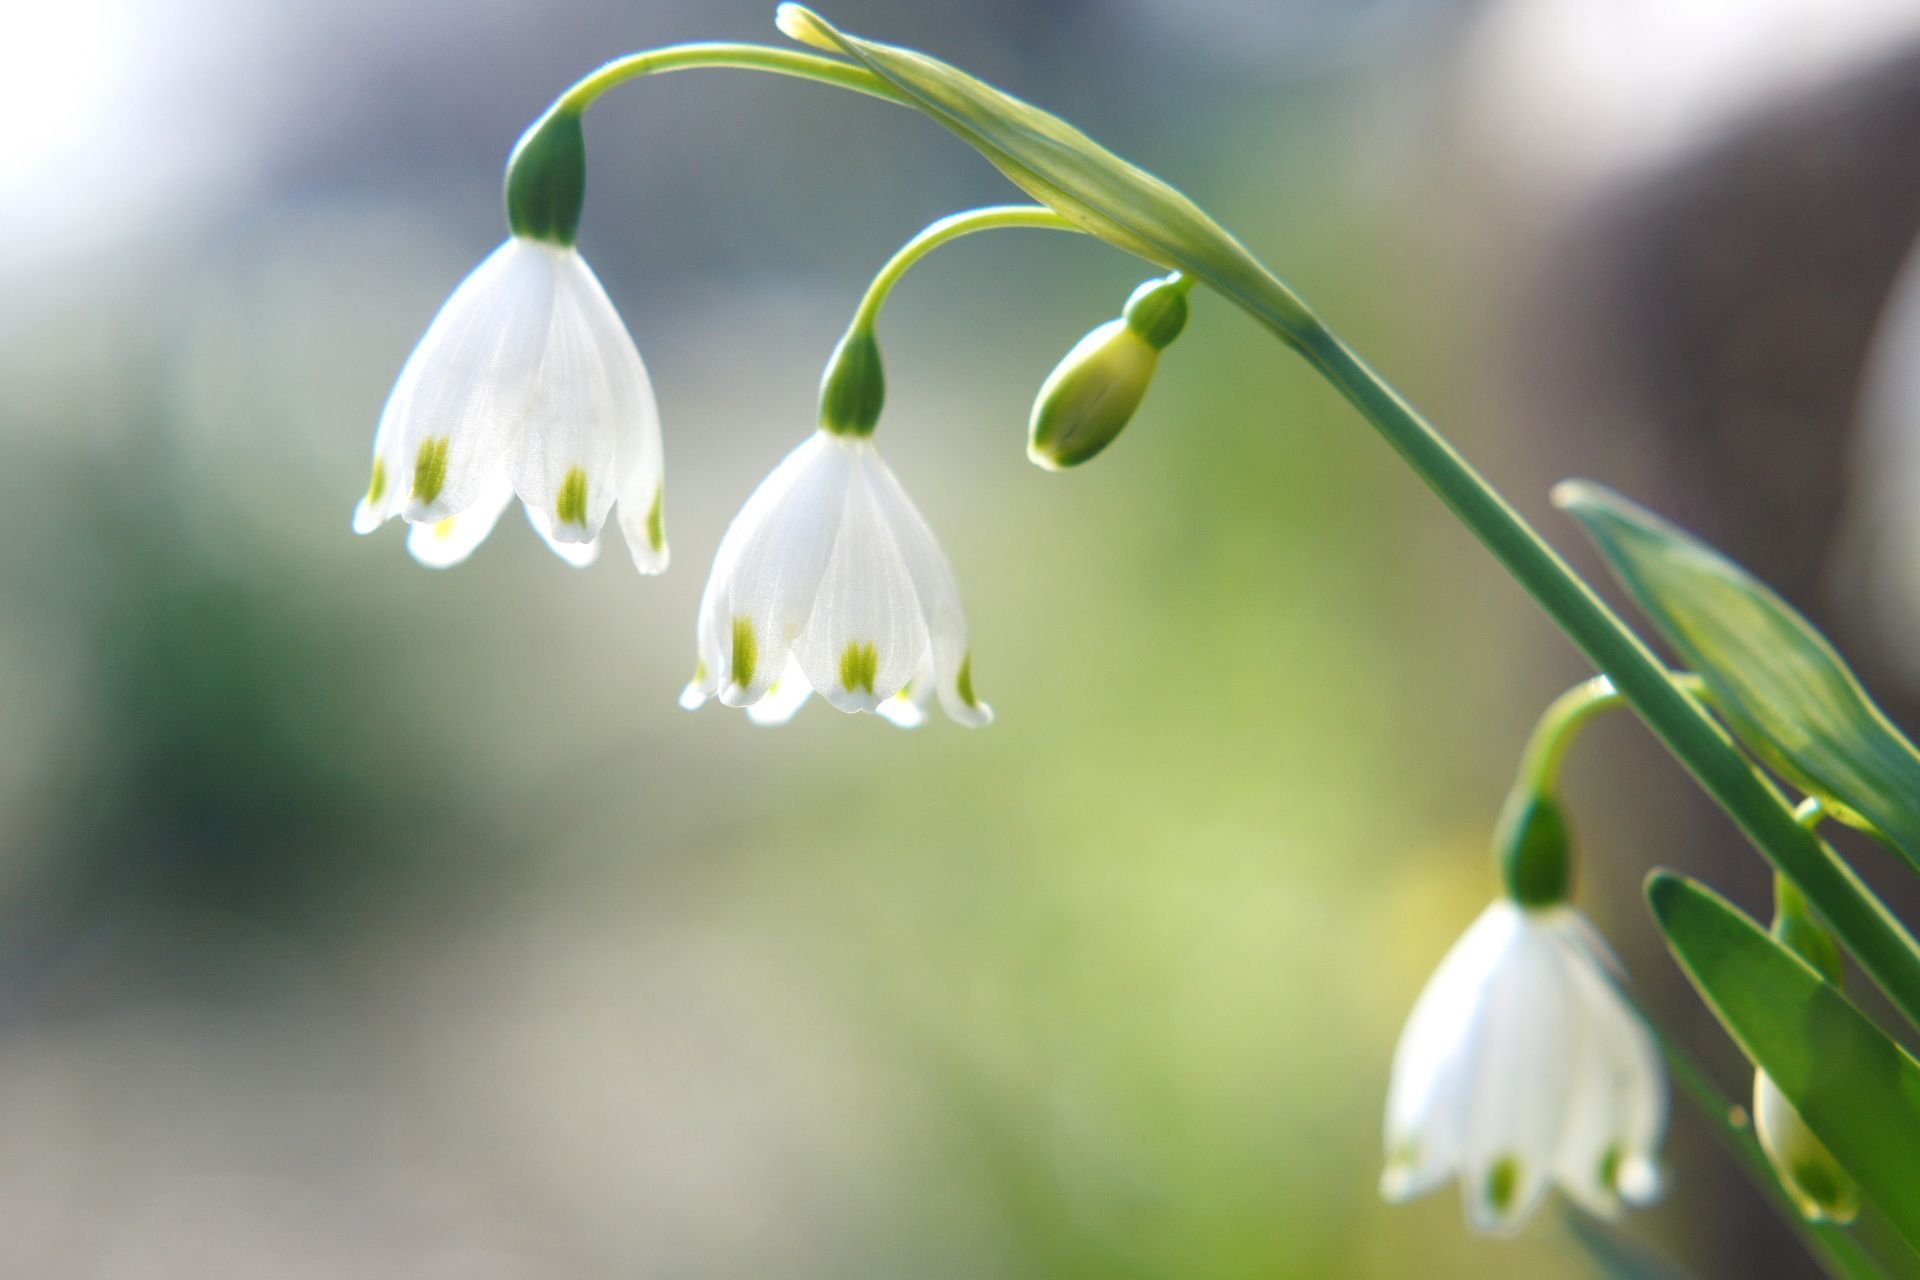 アルビオン Albion 公式 おはようございます 今日の誕生花は スノーフレーク 花言葉は 純粋 です 白いスズランのような花姿に 花びらの縁の斑点がより一層ピュアな印象を引き立てているように見えますね 愛らしさにしばらく見つめて